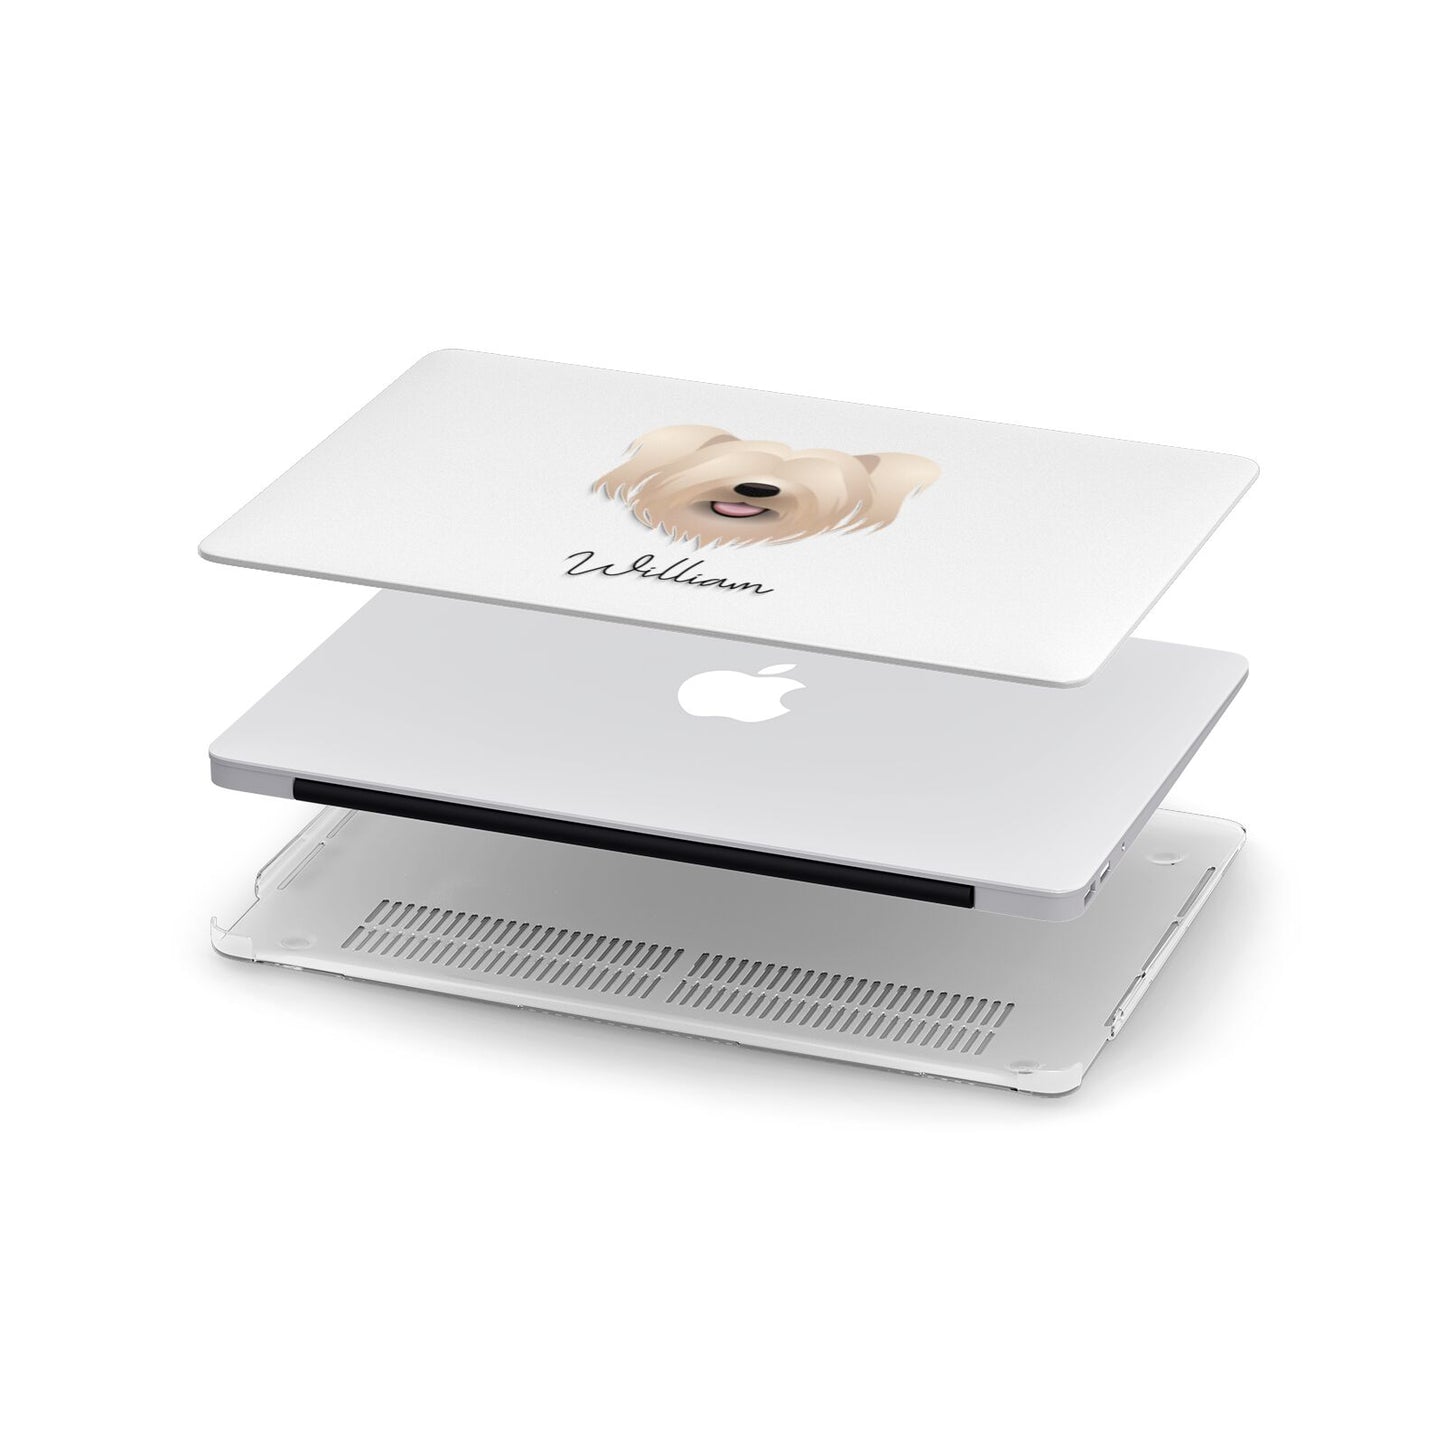 Skye Terrier Personalised Apple MacBook Case in Detail